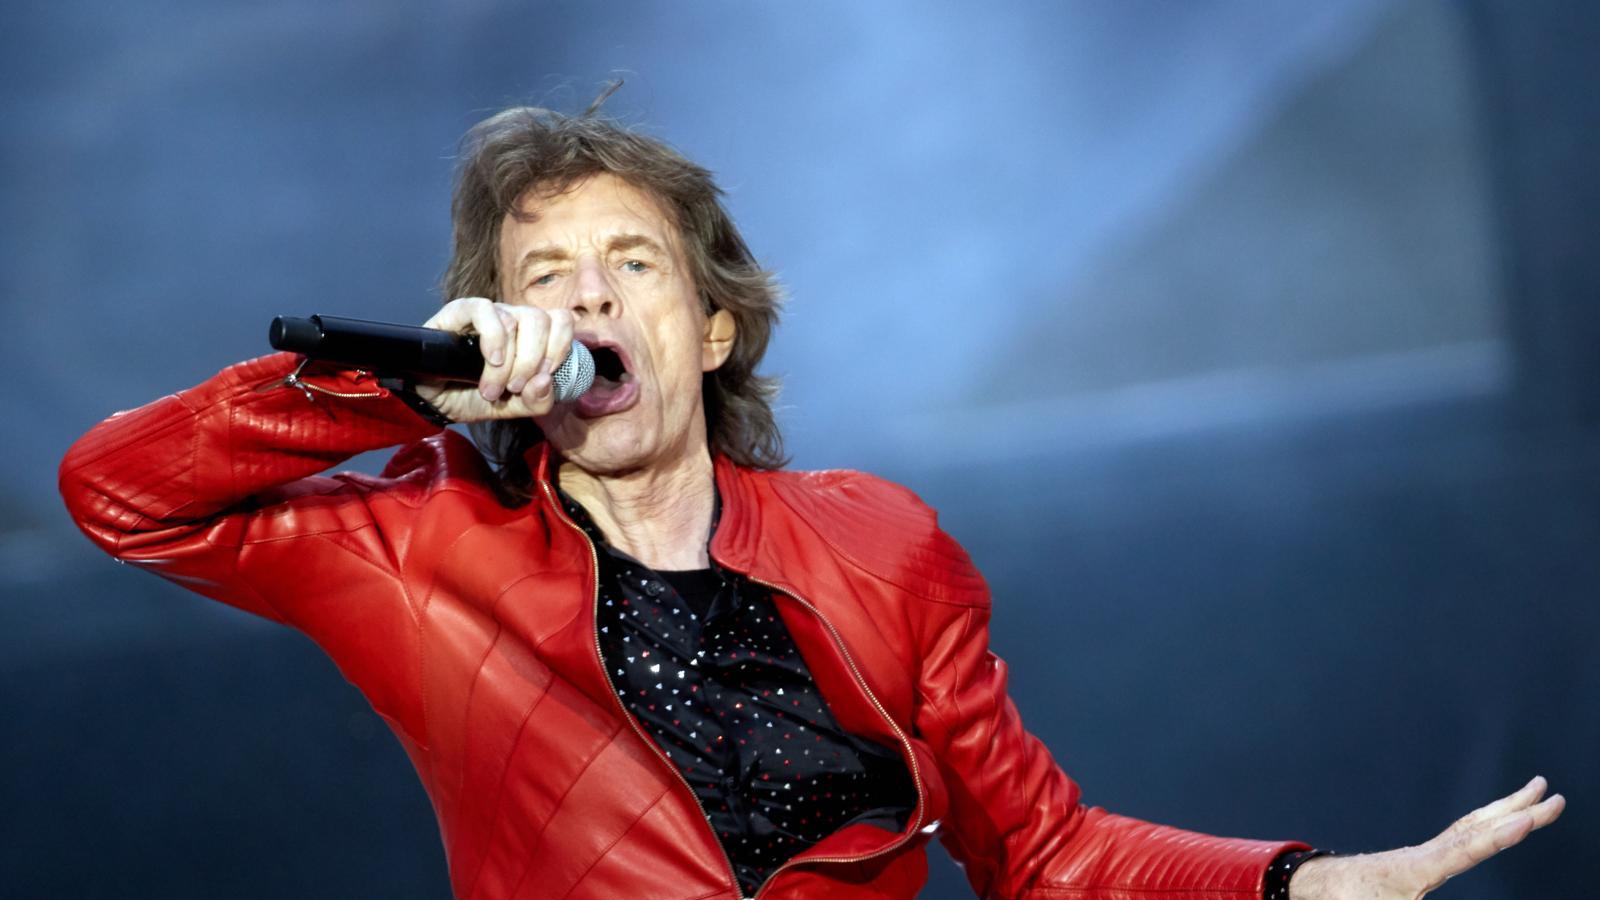 The Rolling Stones anuncian próximo concierto en Madrid, sin fecha ni espacio